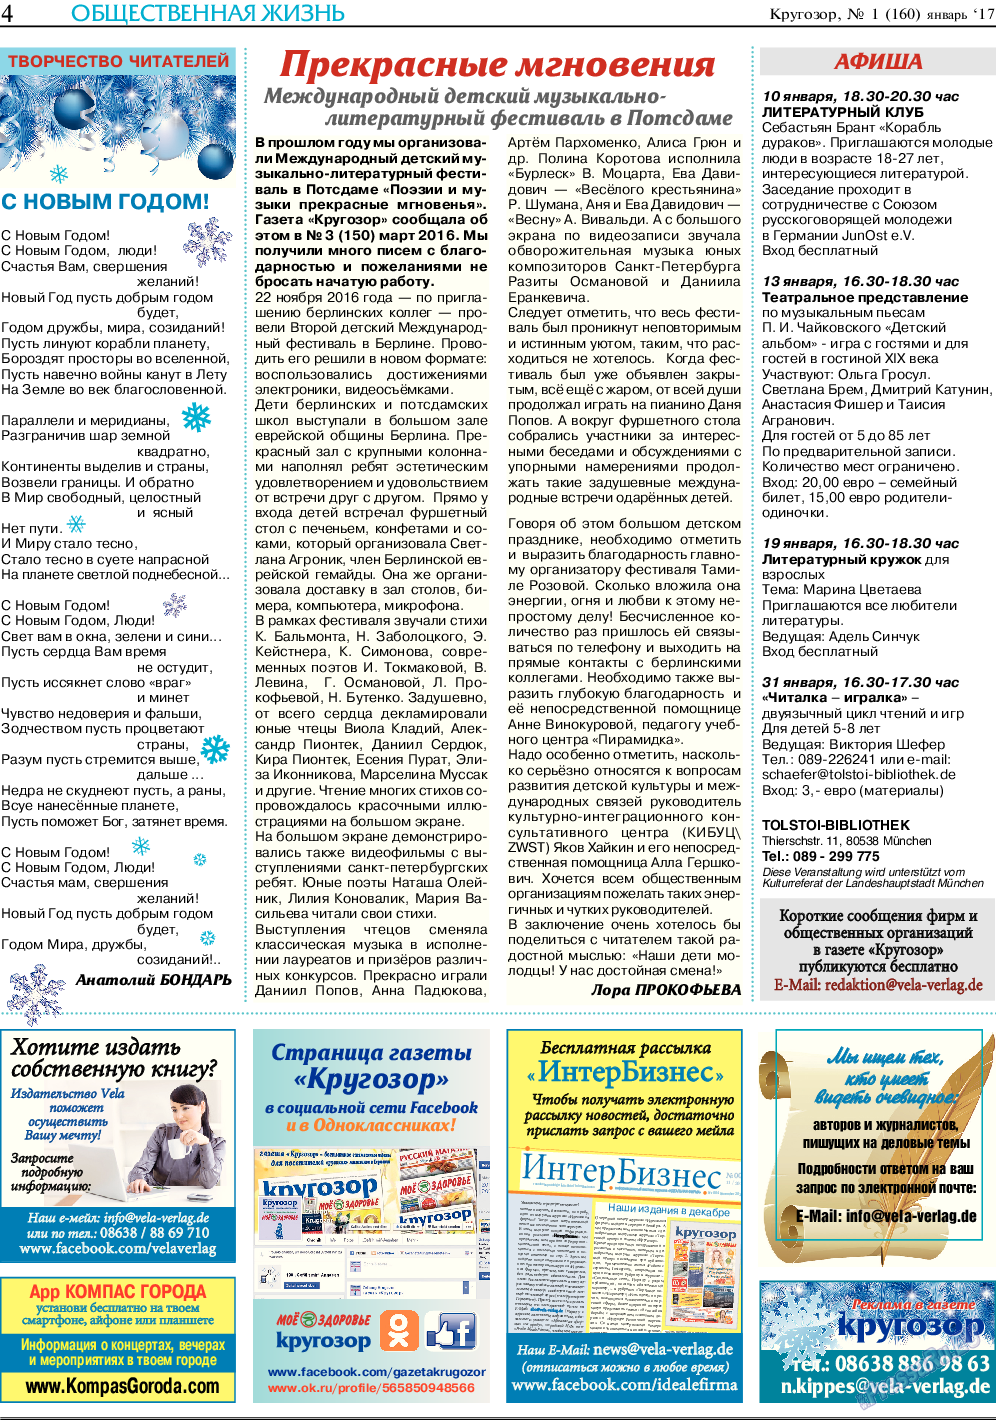 Кругозор (газета). 2017 год, номер 1, стр. 4